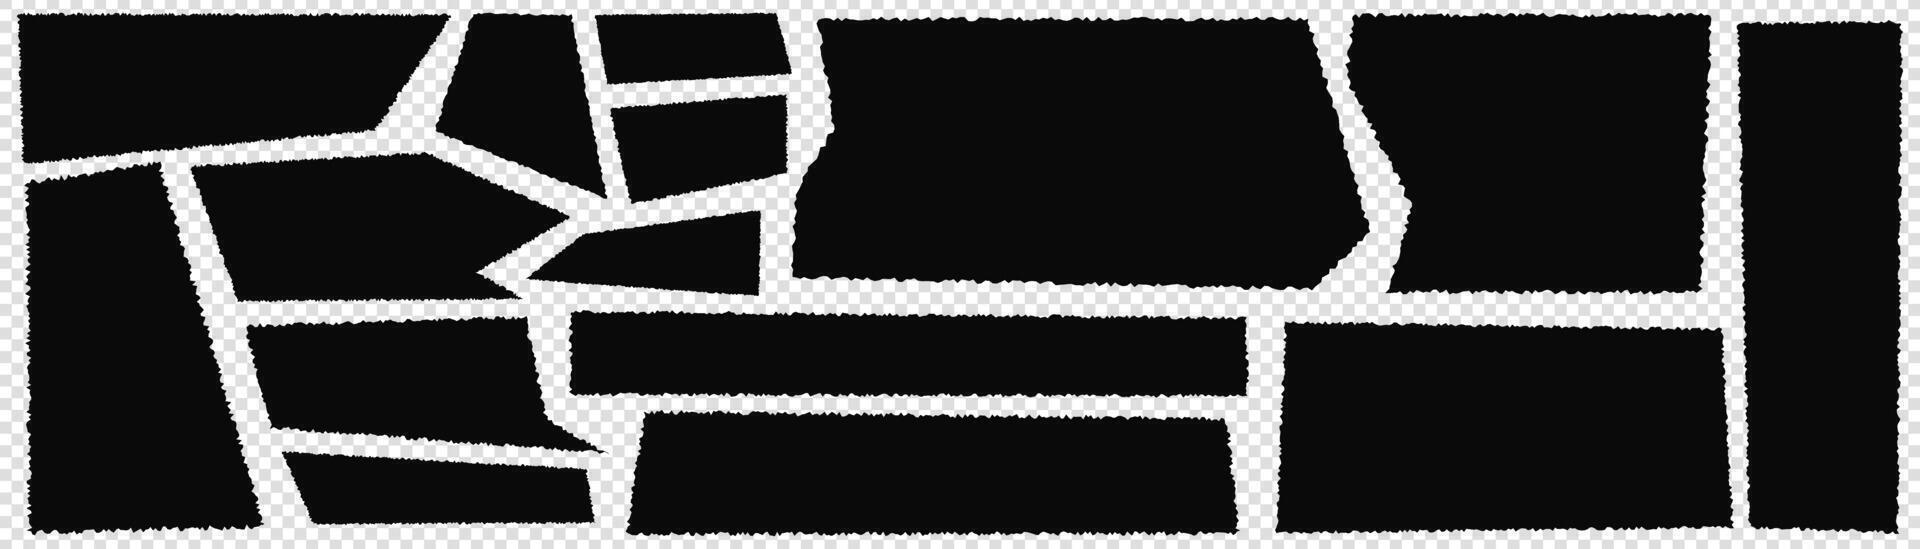 en uppsättning av svart trasig papper. rev rektanglar och skarp former. ark med förvrängd kanter för collage. vektor illustration